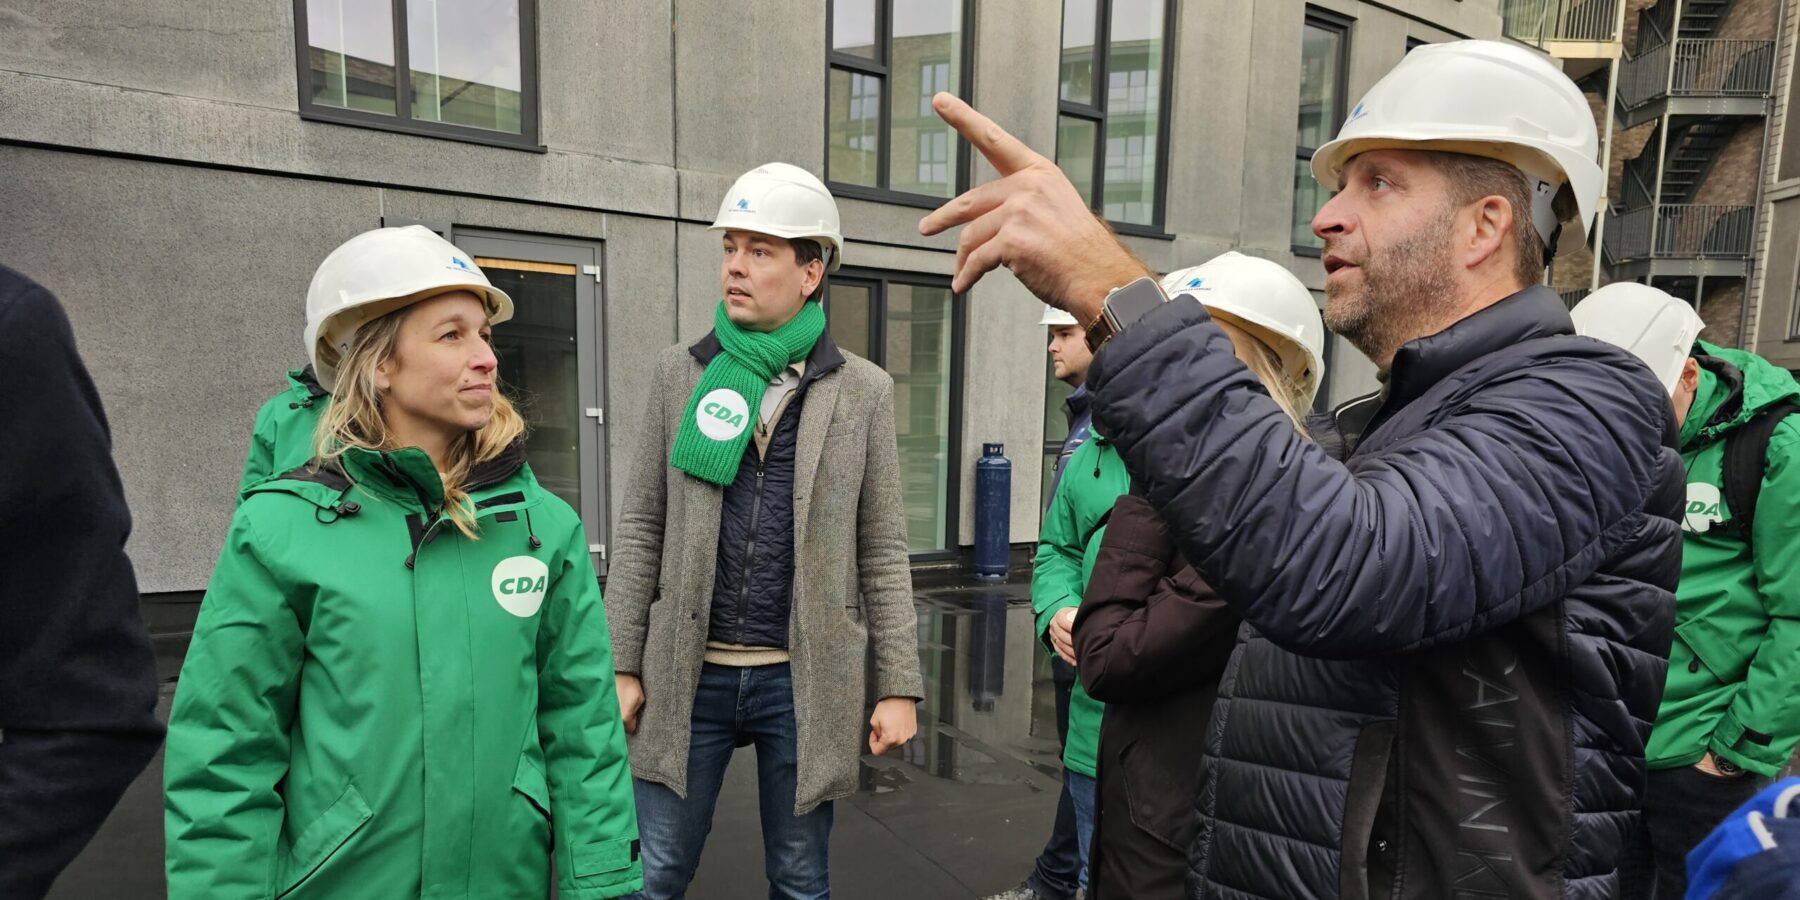 Liesbeth van der Heiden, Julius Terpstra en Hugo de Jonge krijgen een rondleiding in de nieuwbouw van Hof36. (Foto's: Chris de Waard)